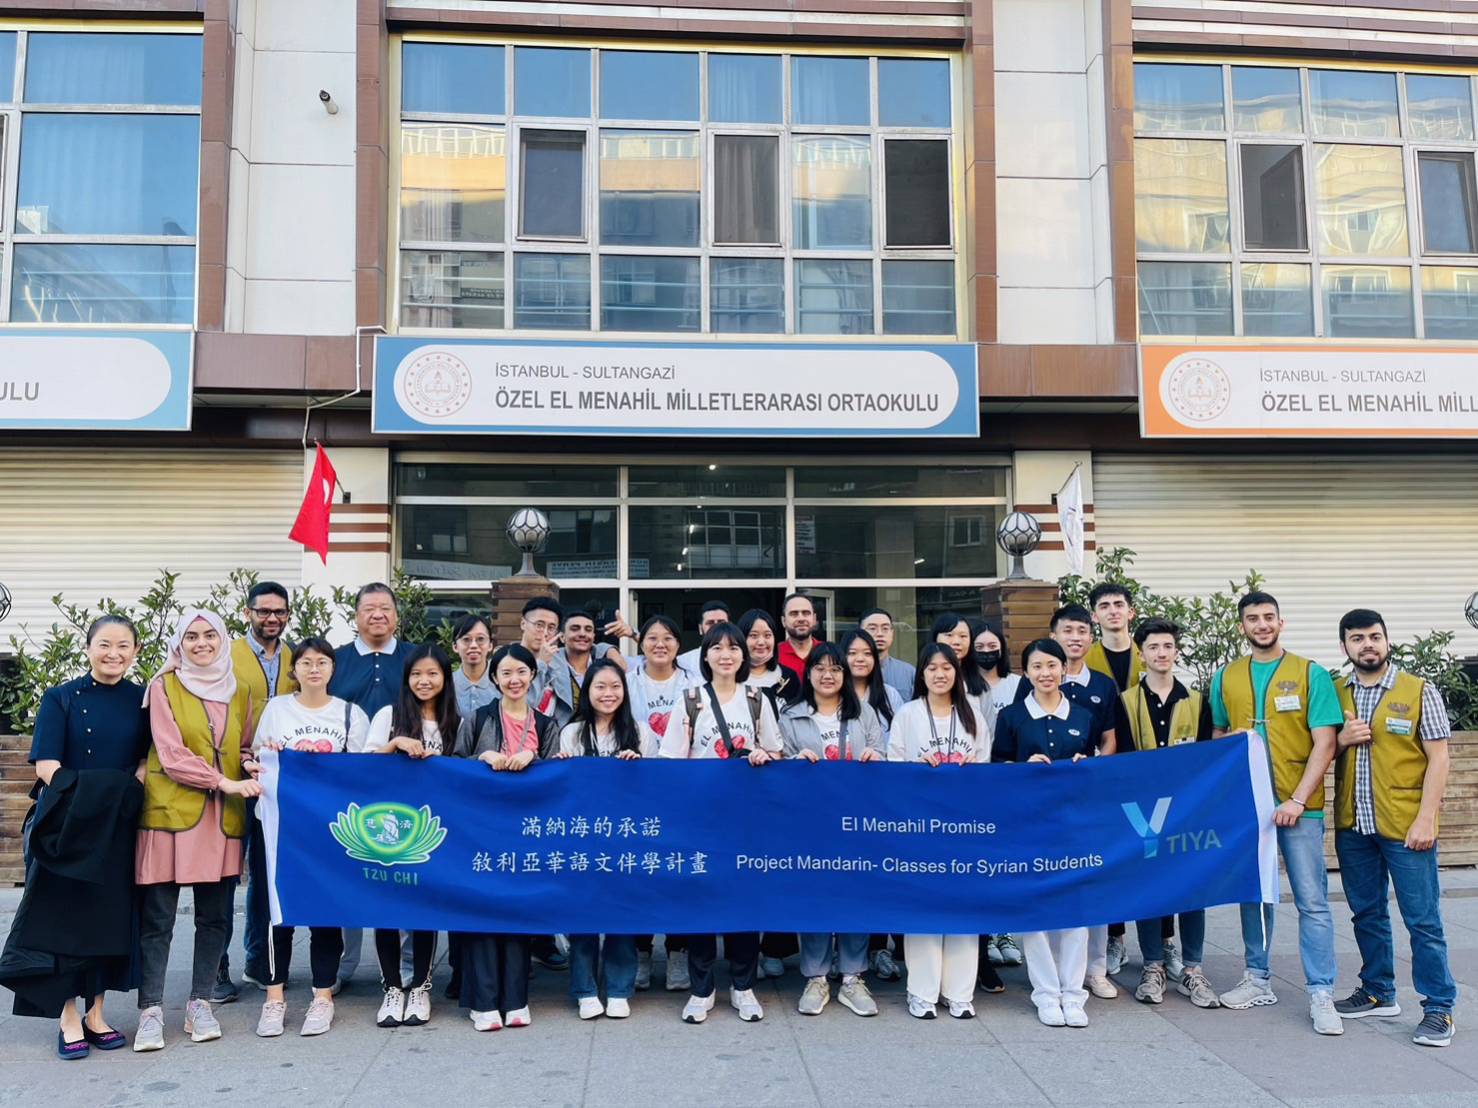 剛抵達滿納海學校的第一天，學校的青年志工們來到門口迎接大家的到來，青年志工很開心有機會認識來自台灣的朋友們!